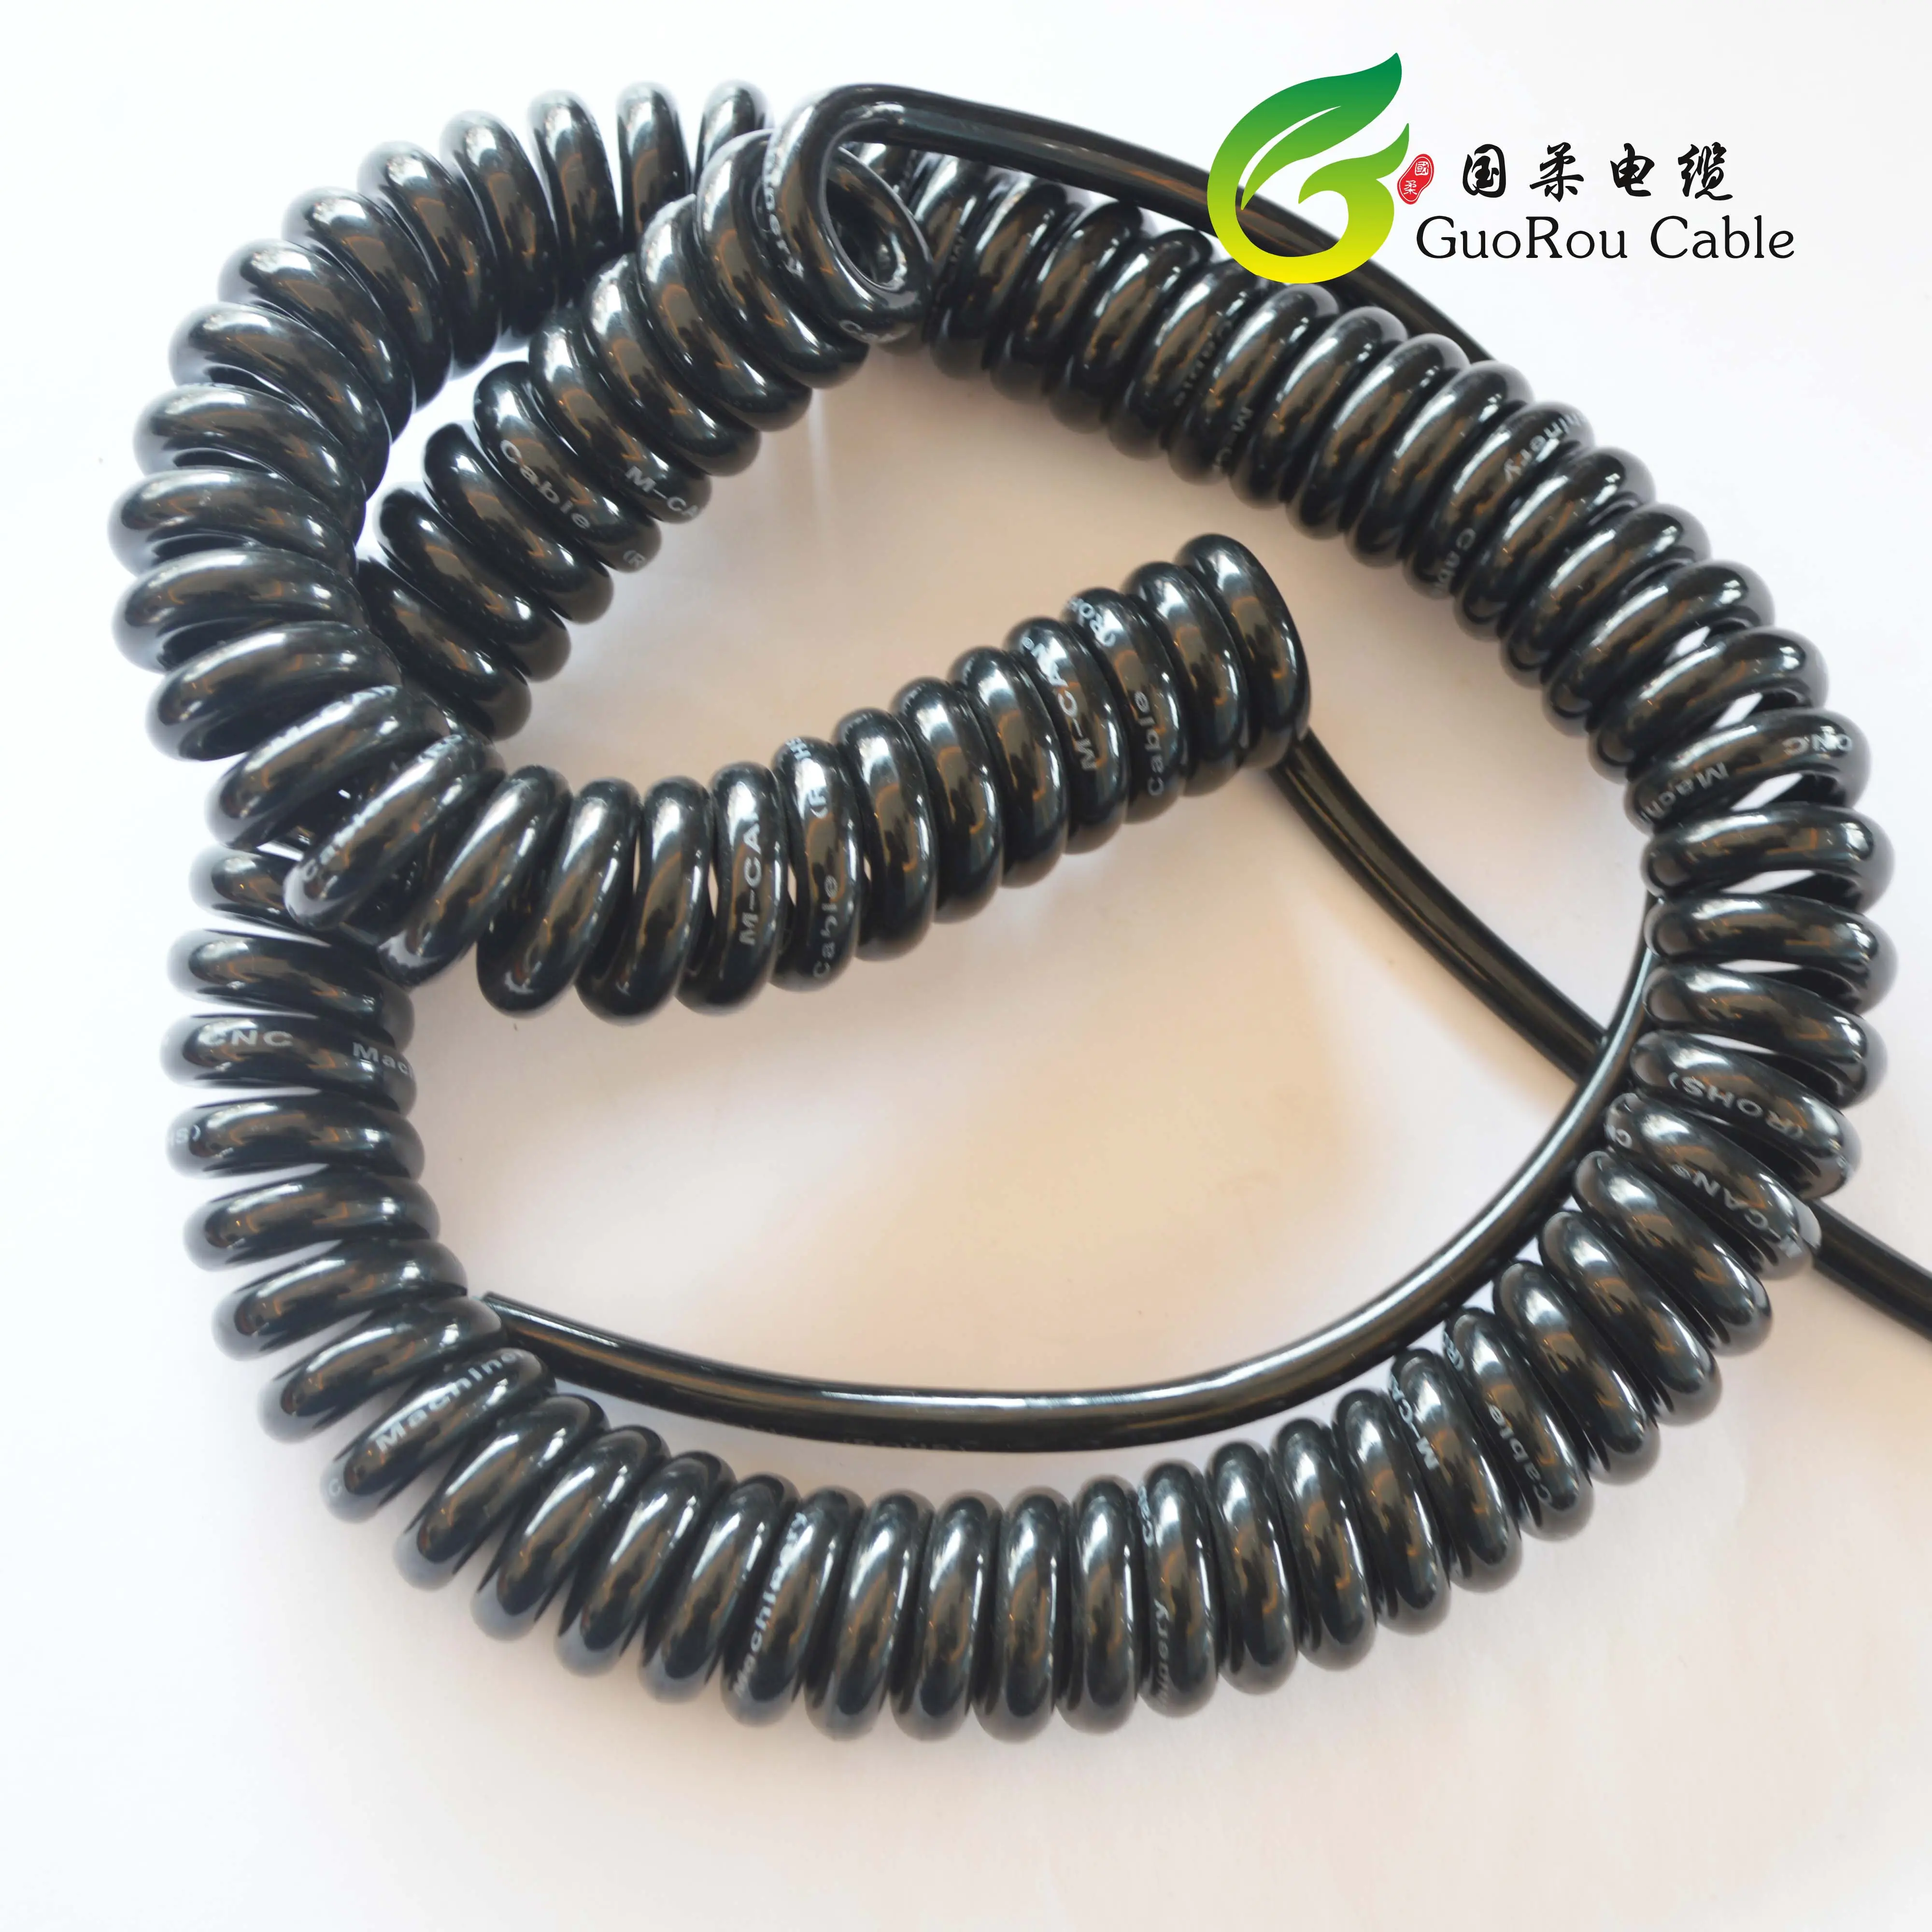 Cable flexible retráctil en espiral de alta calidad, novedad